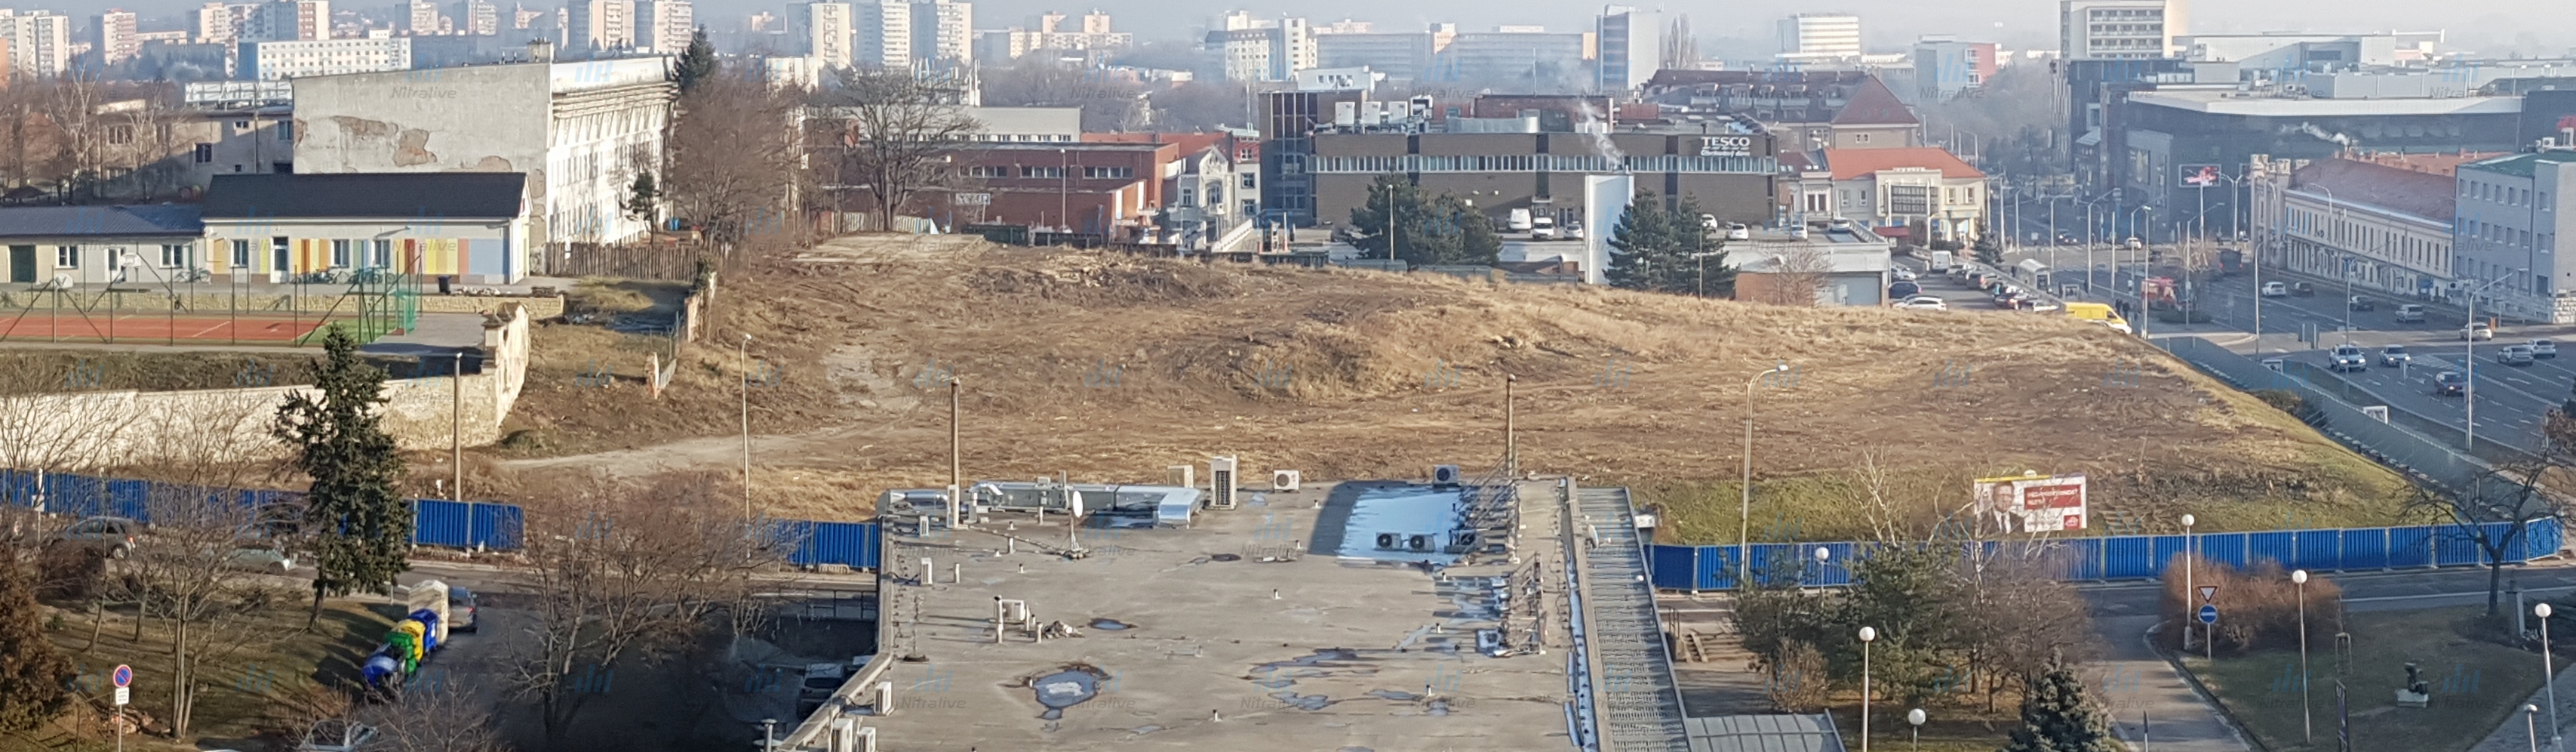 Tabáň - pohľad na pozemok pred plánovanou výstavbou